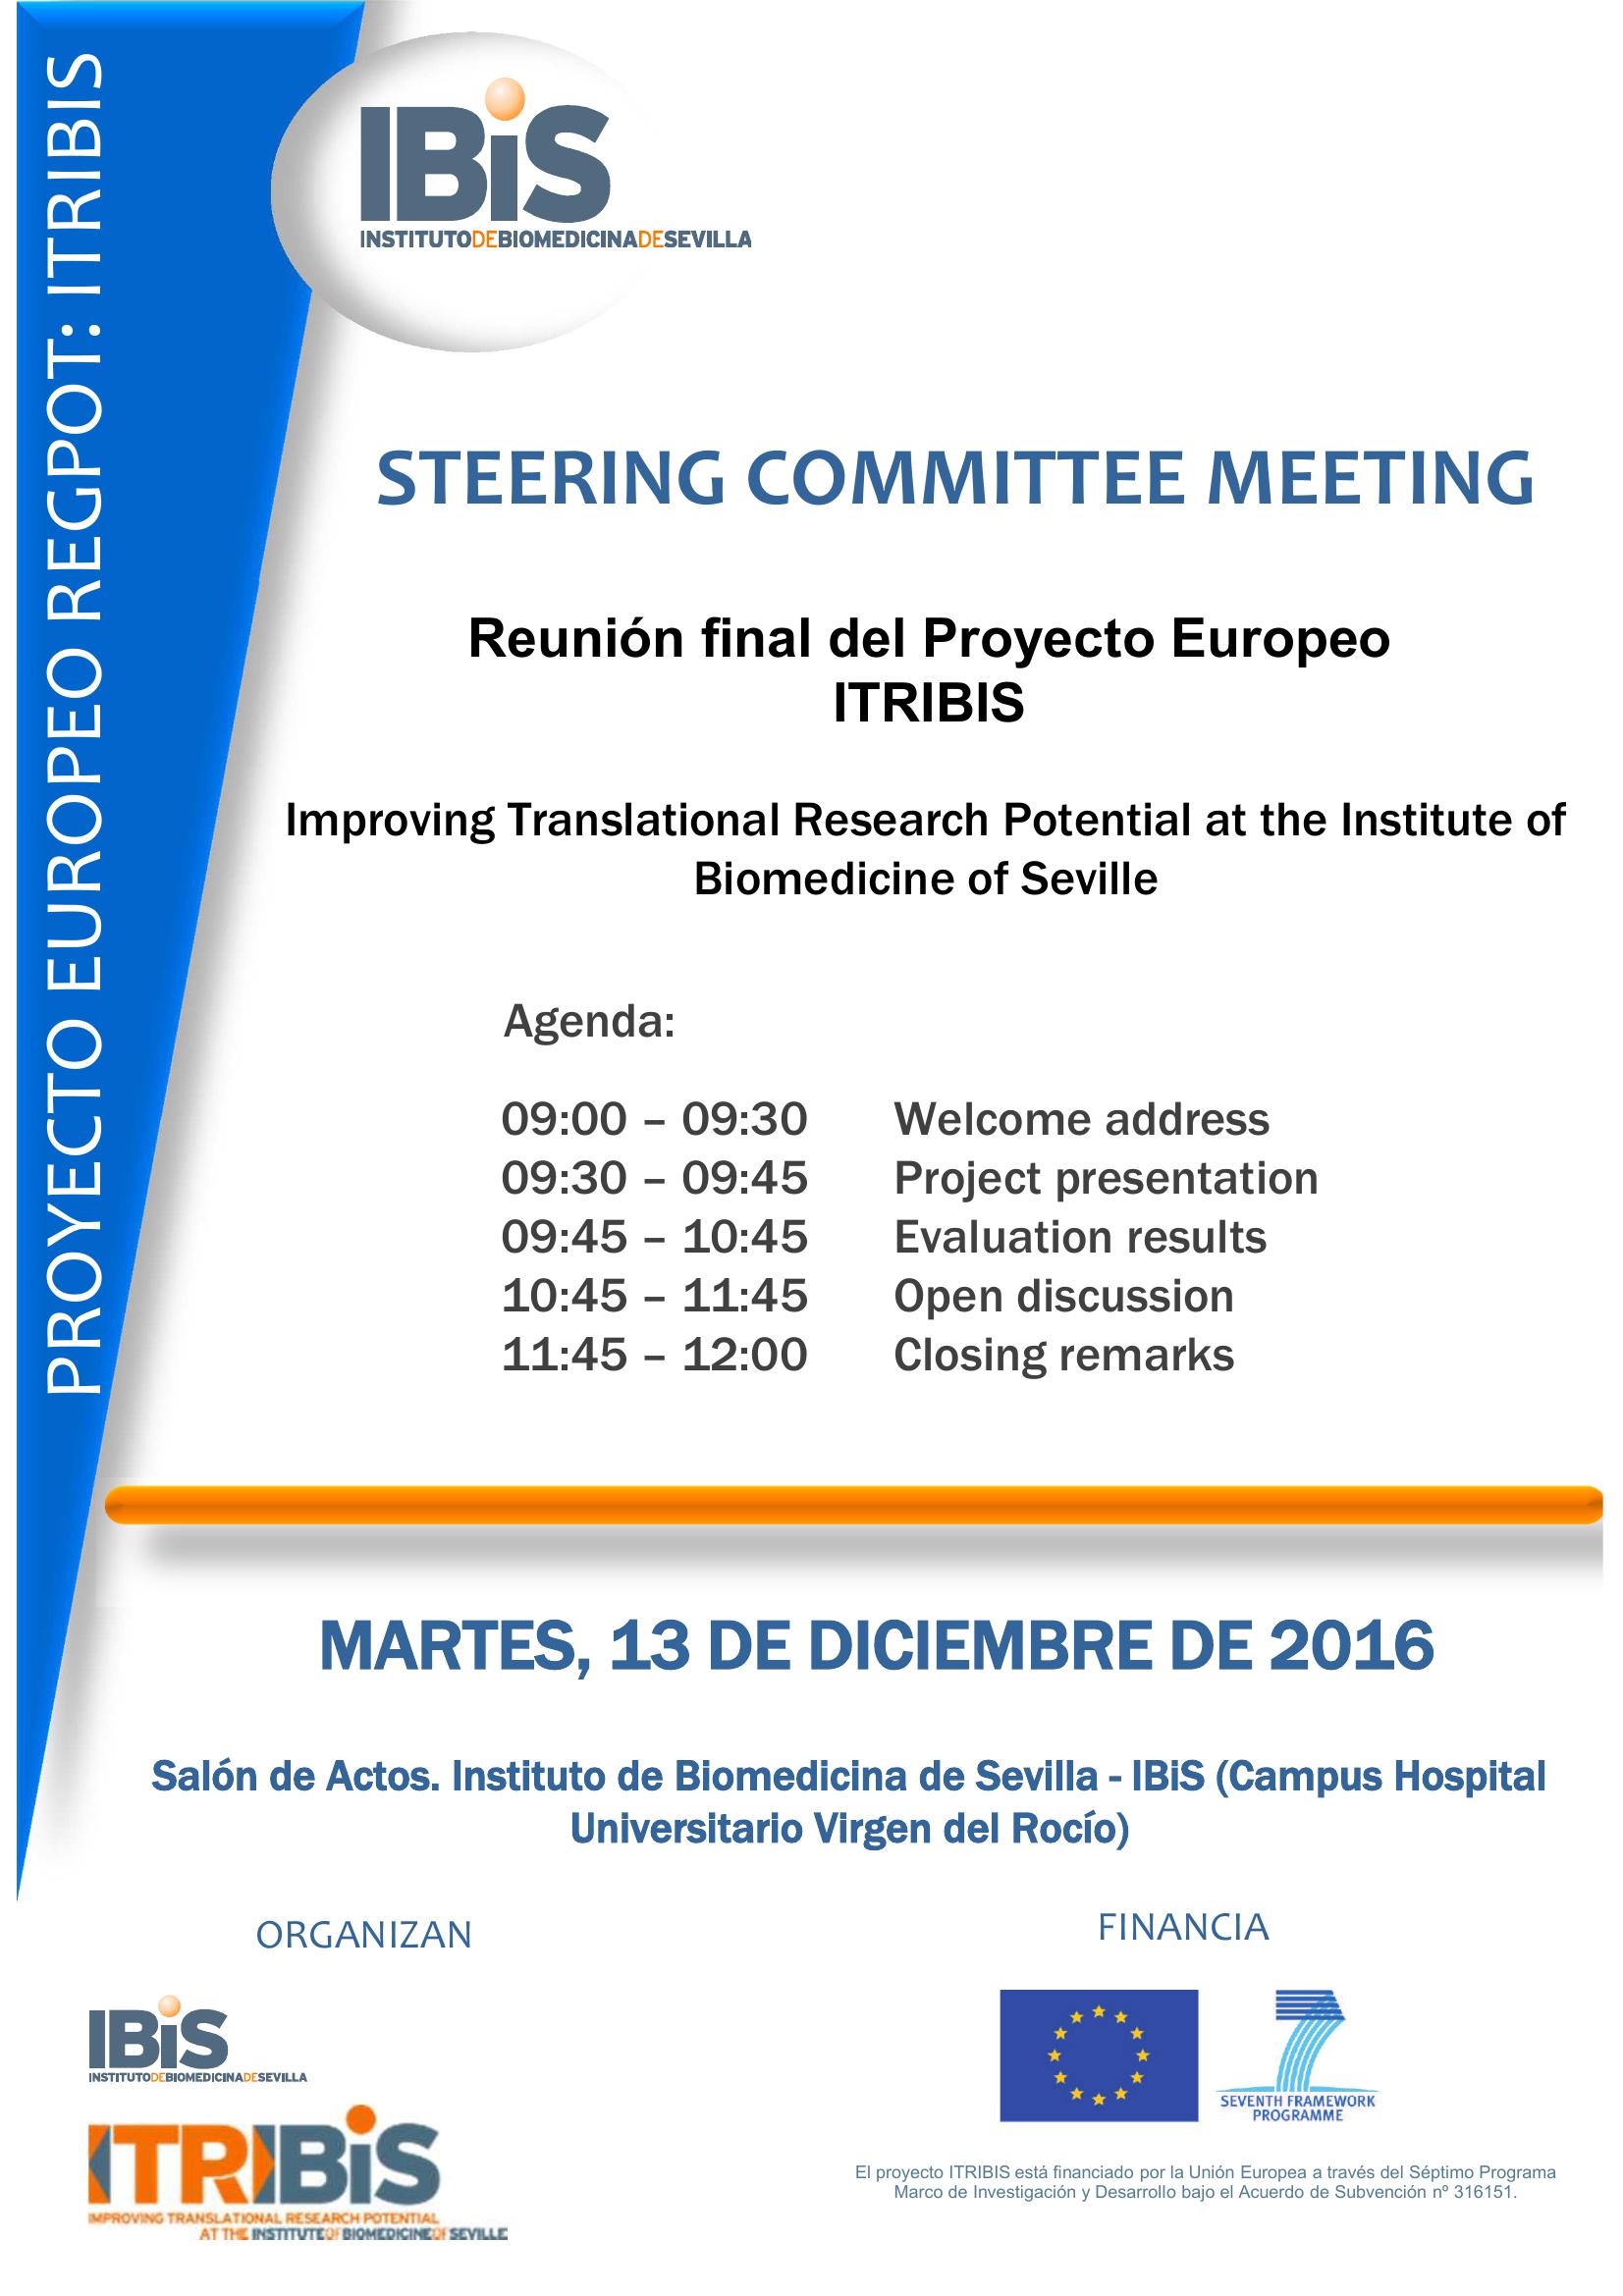 Poster: Reunión final del Proyecto Europeo ITRIBIS